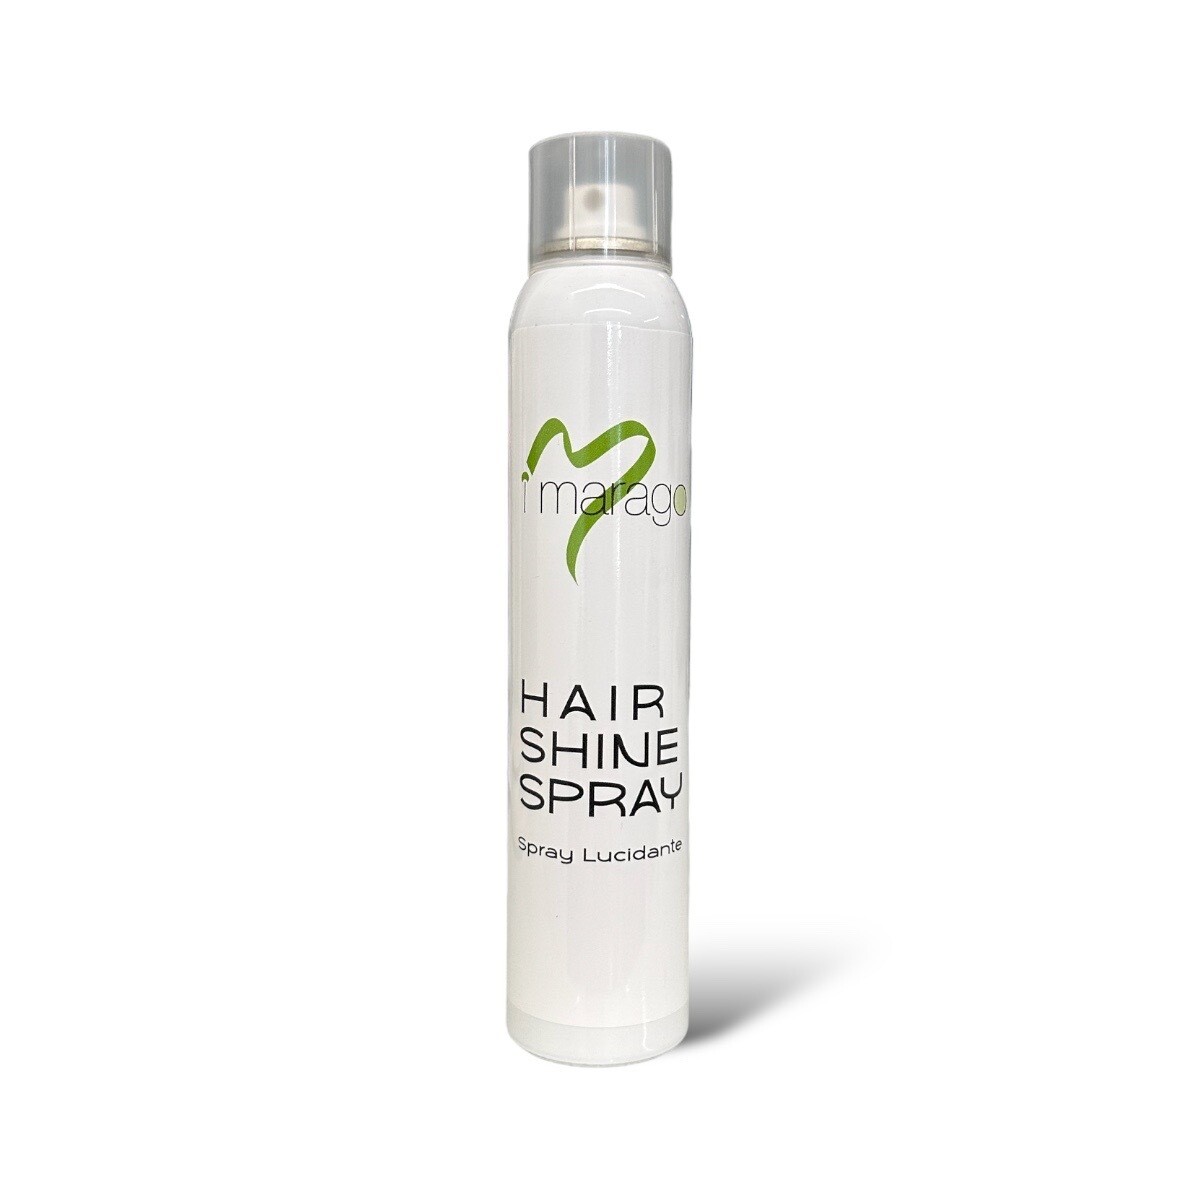 HAIR SHINE SPRAY - spray lucidante 250ml